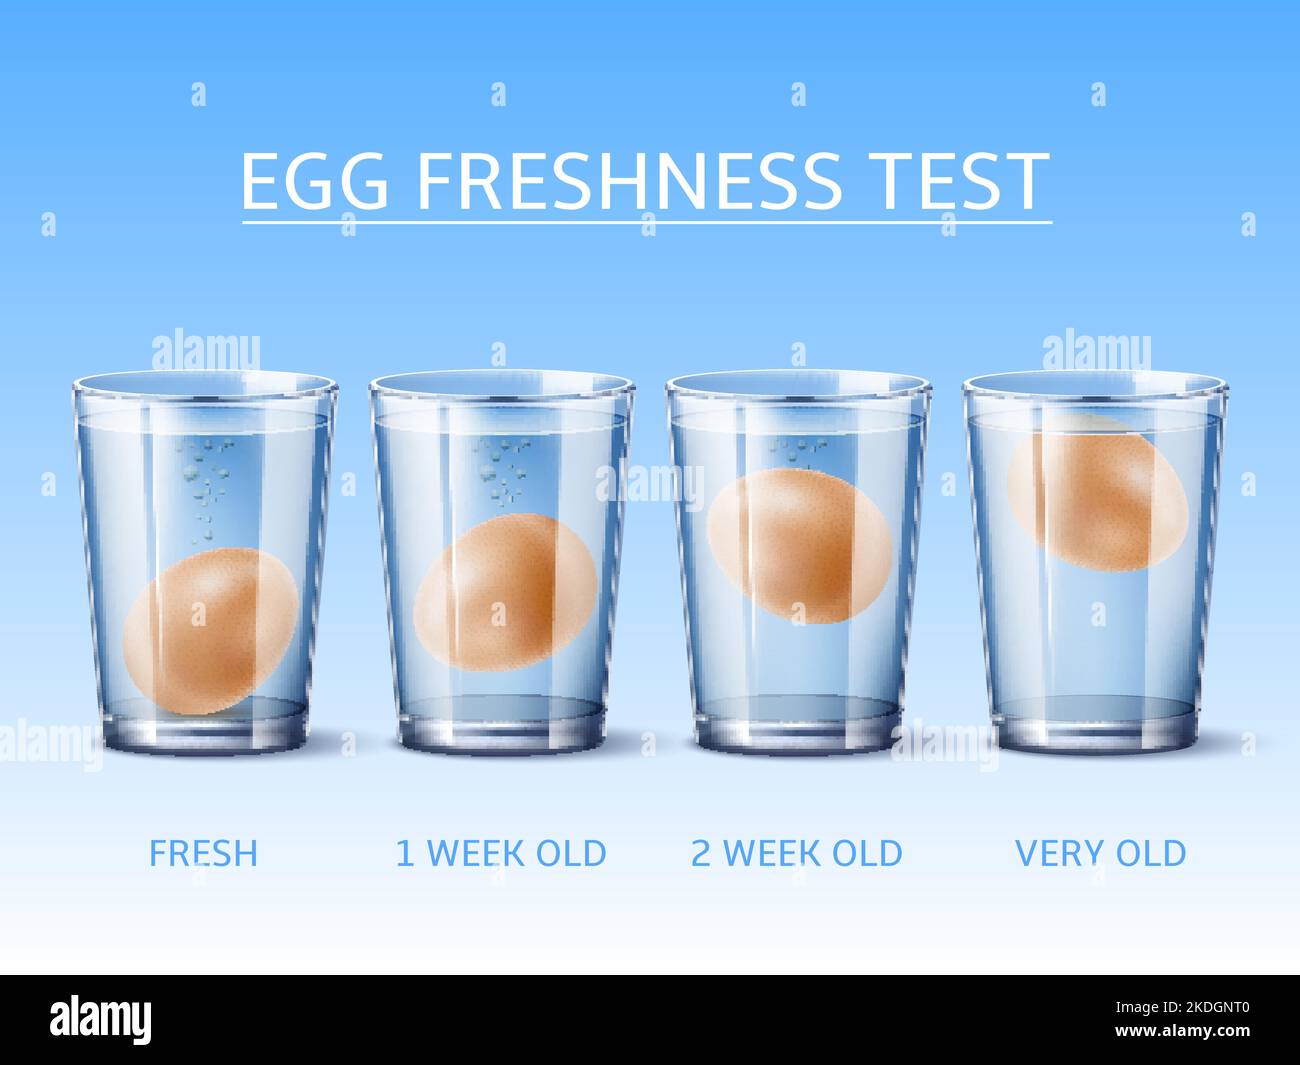 Egg freshness test Banque de photographies et d'images à haute résolution -  Alamy